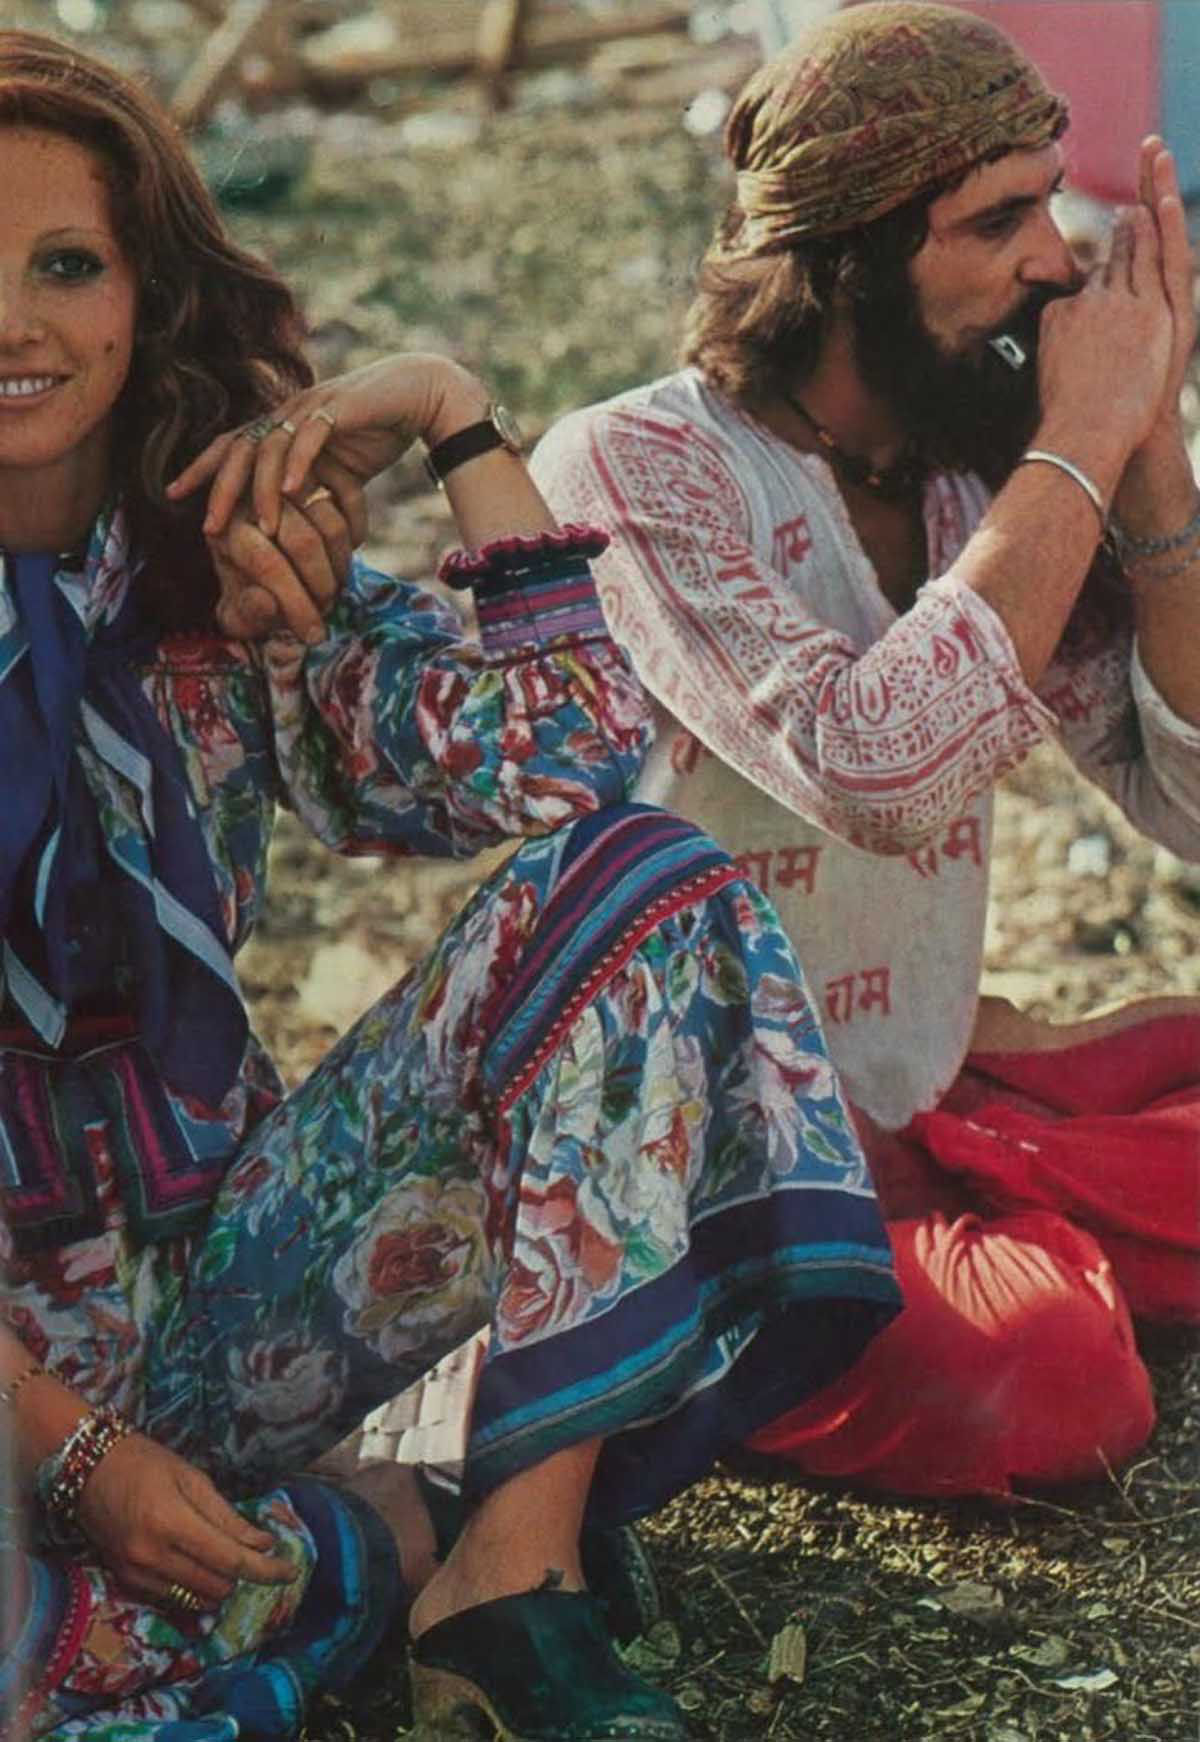 Fotos impressionantes retratam a moda rebelde de Woodstock em 1969 20